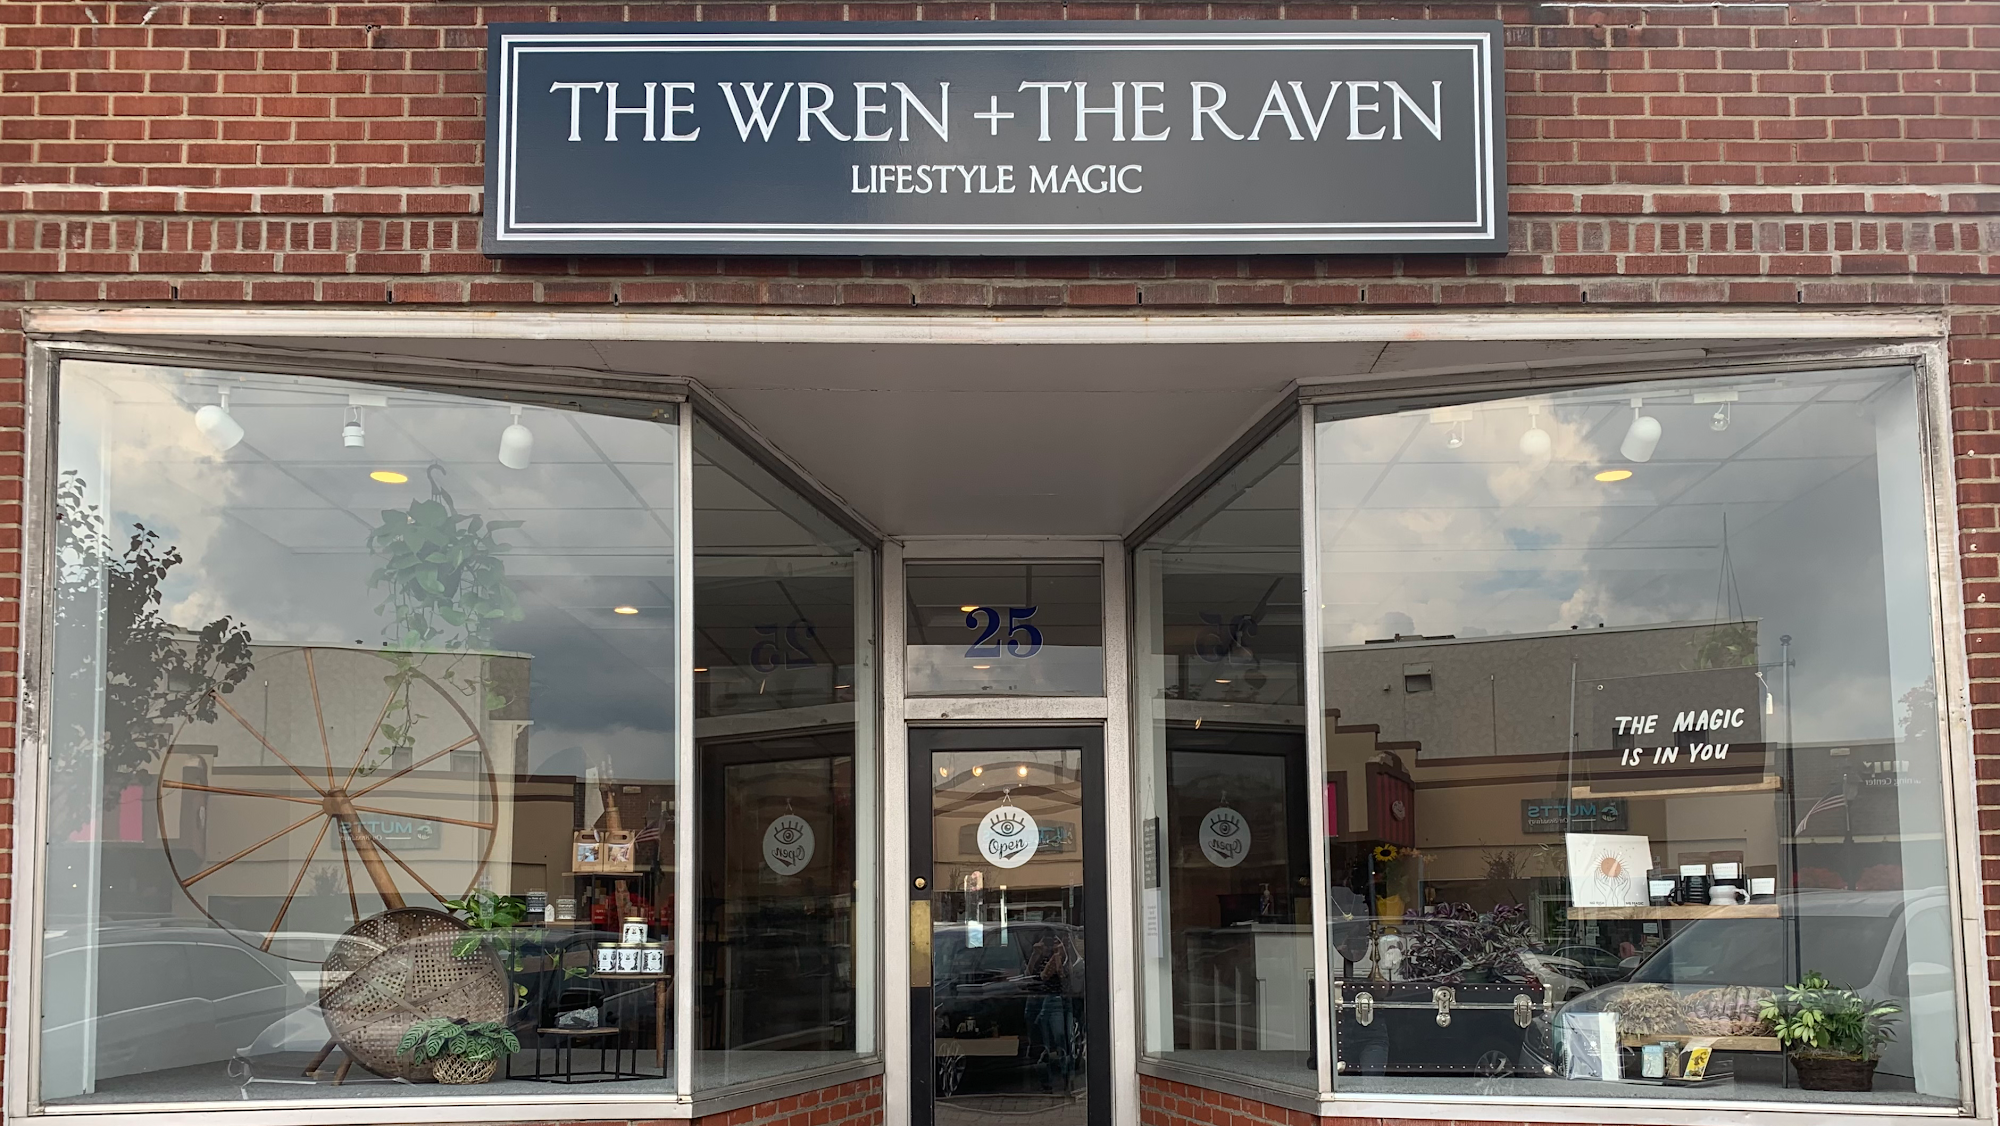 The Wren + The Raven